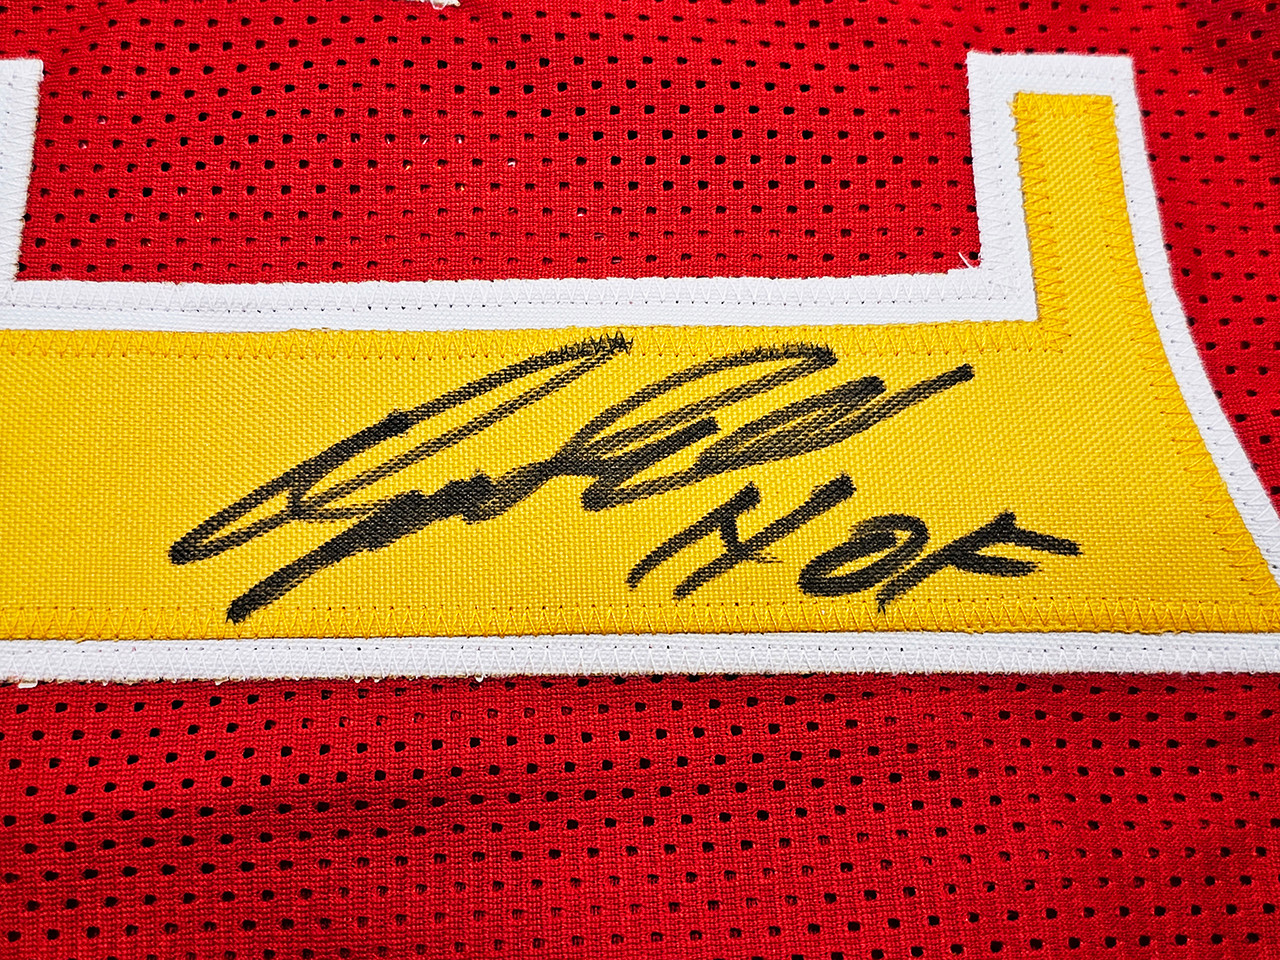 Atlanta Hawks Dominique Wilkins Autographed Red Jersey HOF JSA